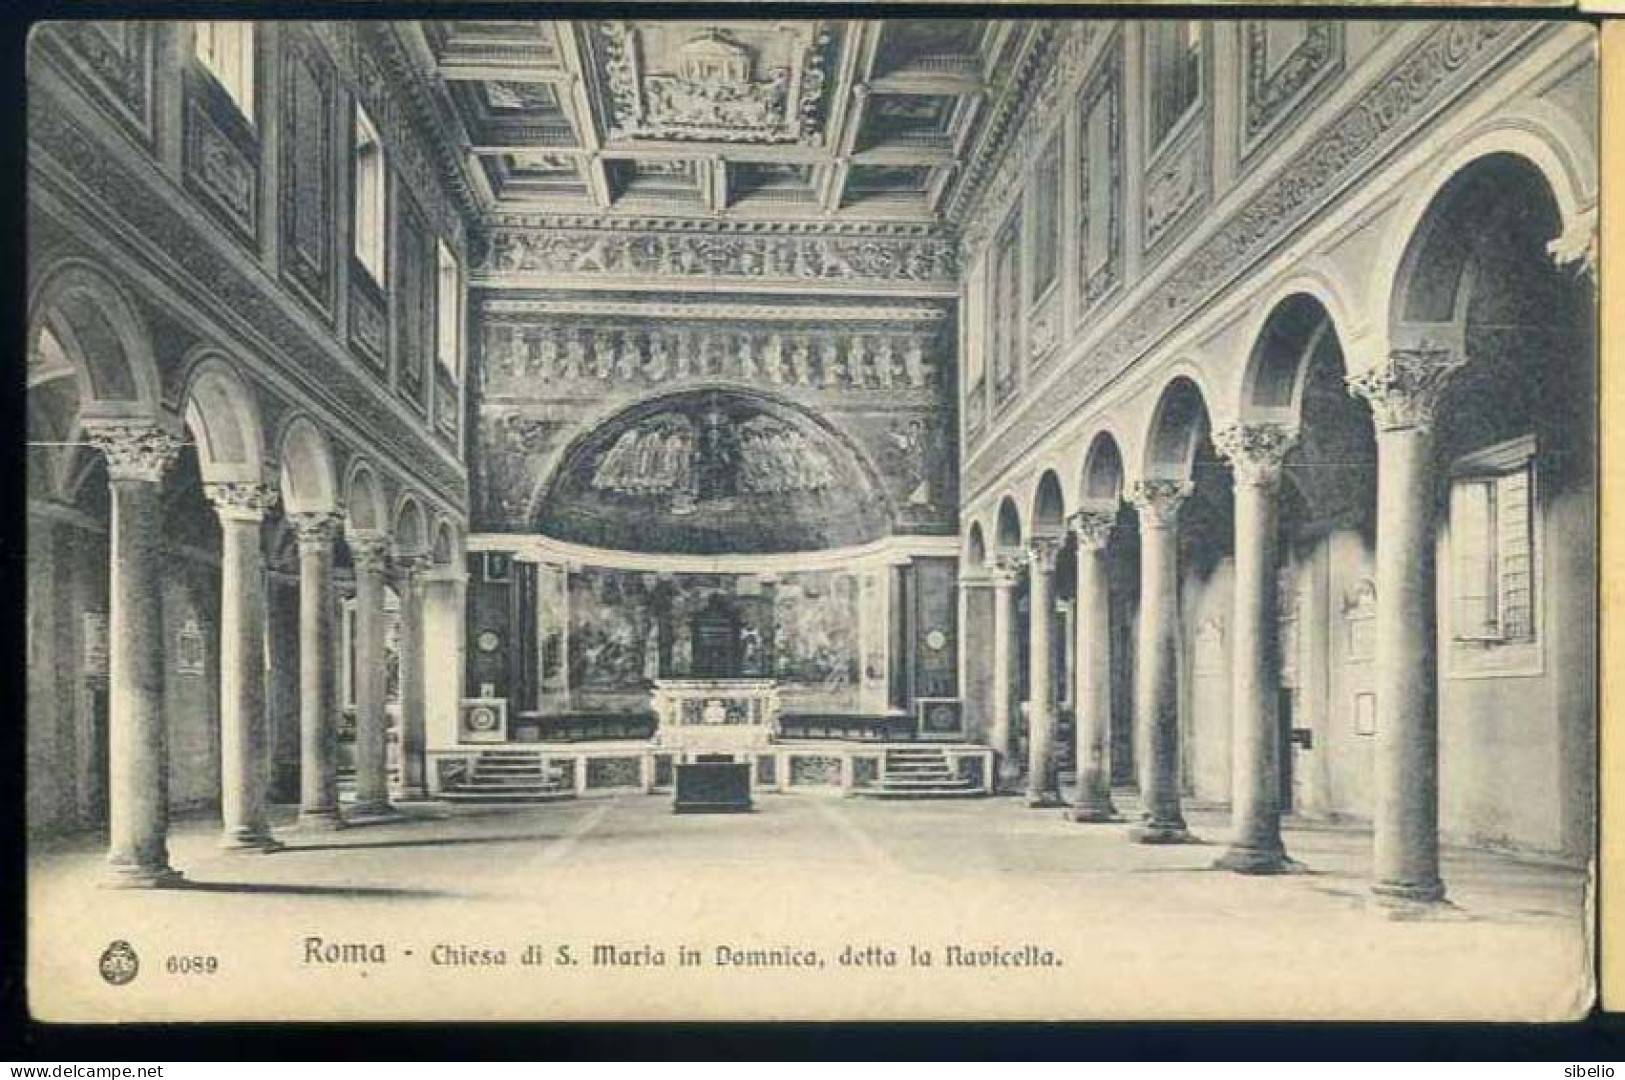 Roma - dieci cartoline antiche - rif. 3